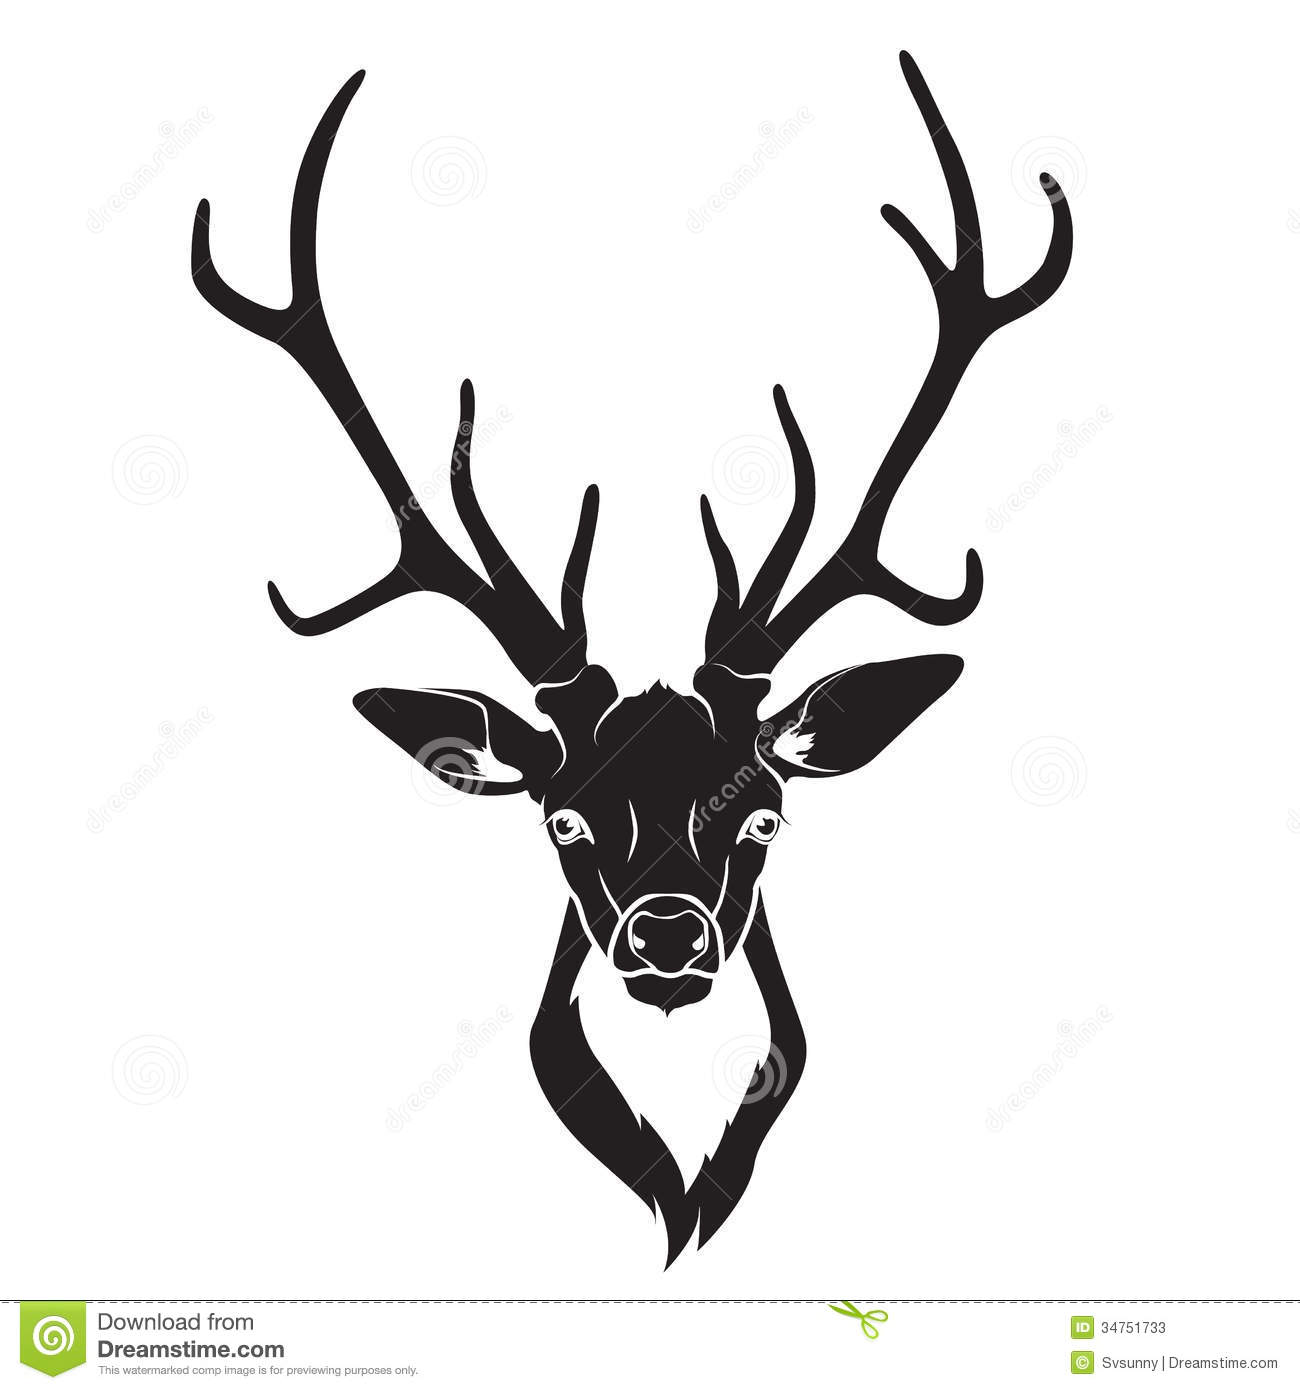 deer vector clipart - photo #45